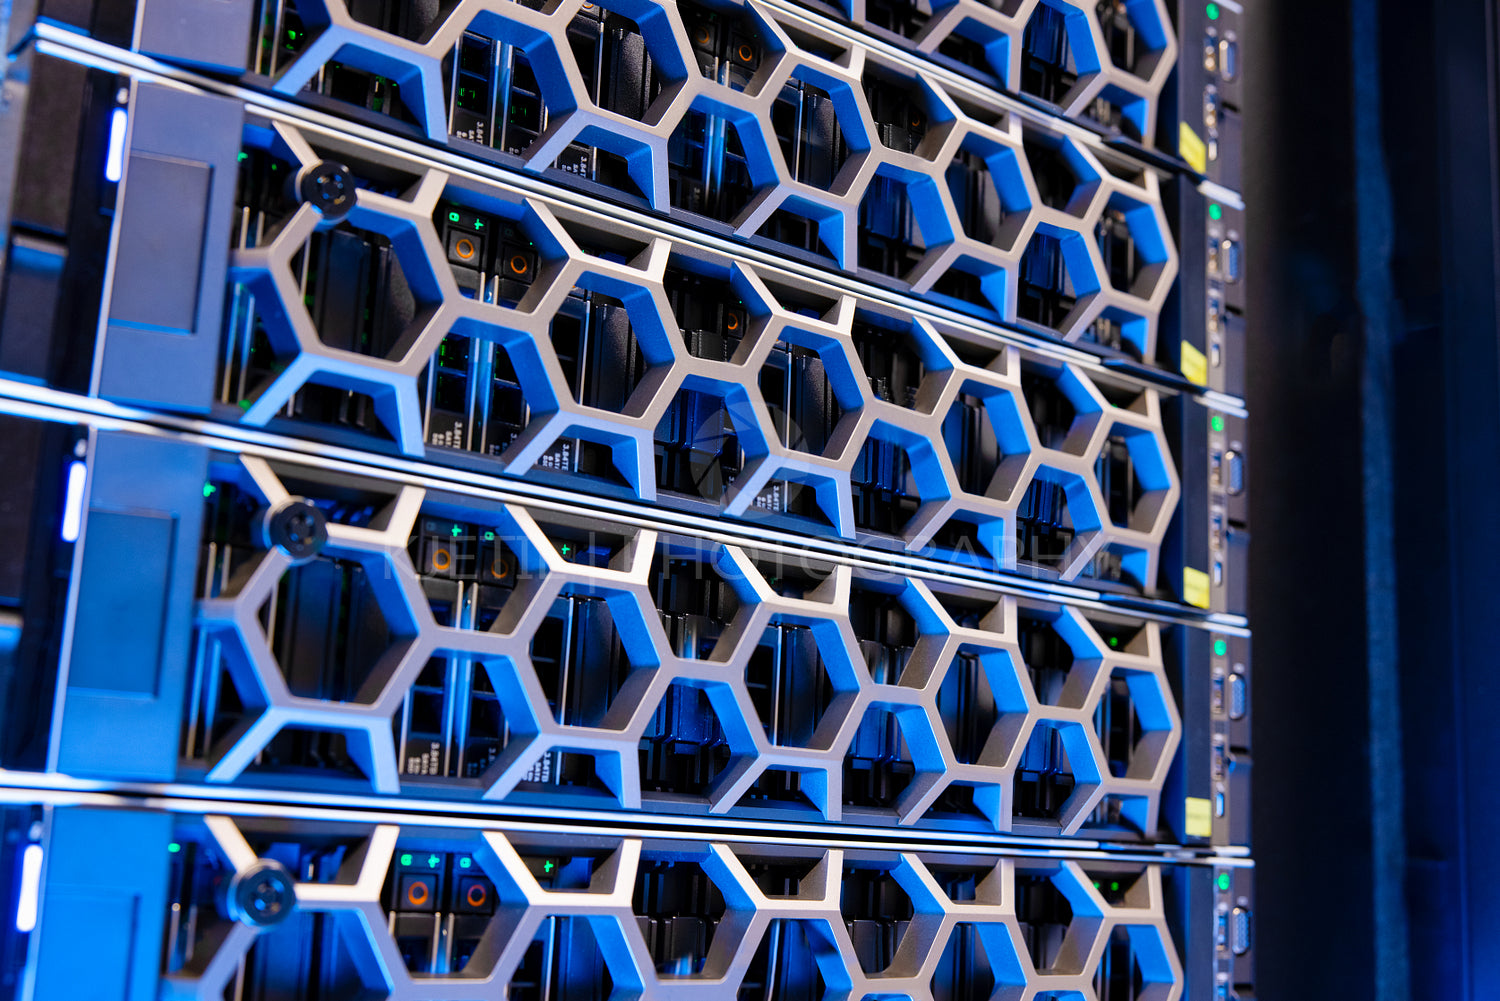 Virtual Modern Hard Drives In Illuminated Blue Datacenter